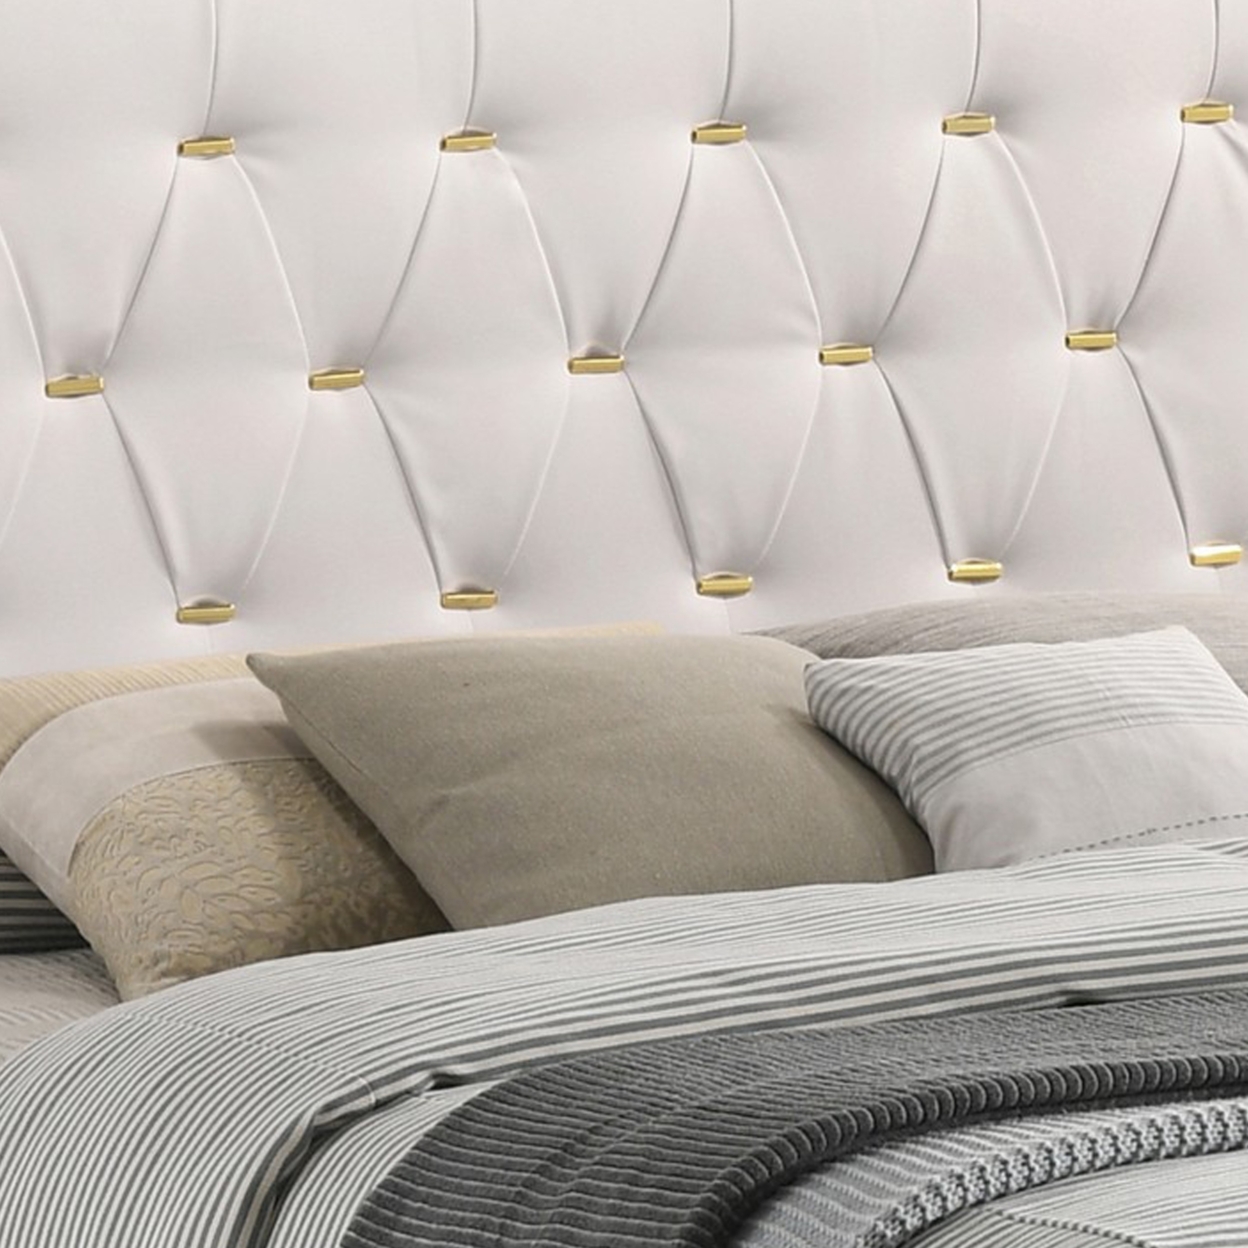 Lif Platform California King Size Bed, Tufted Headboard, Gold, White Velvet- Saltoro Sherpi